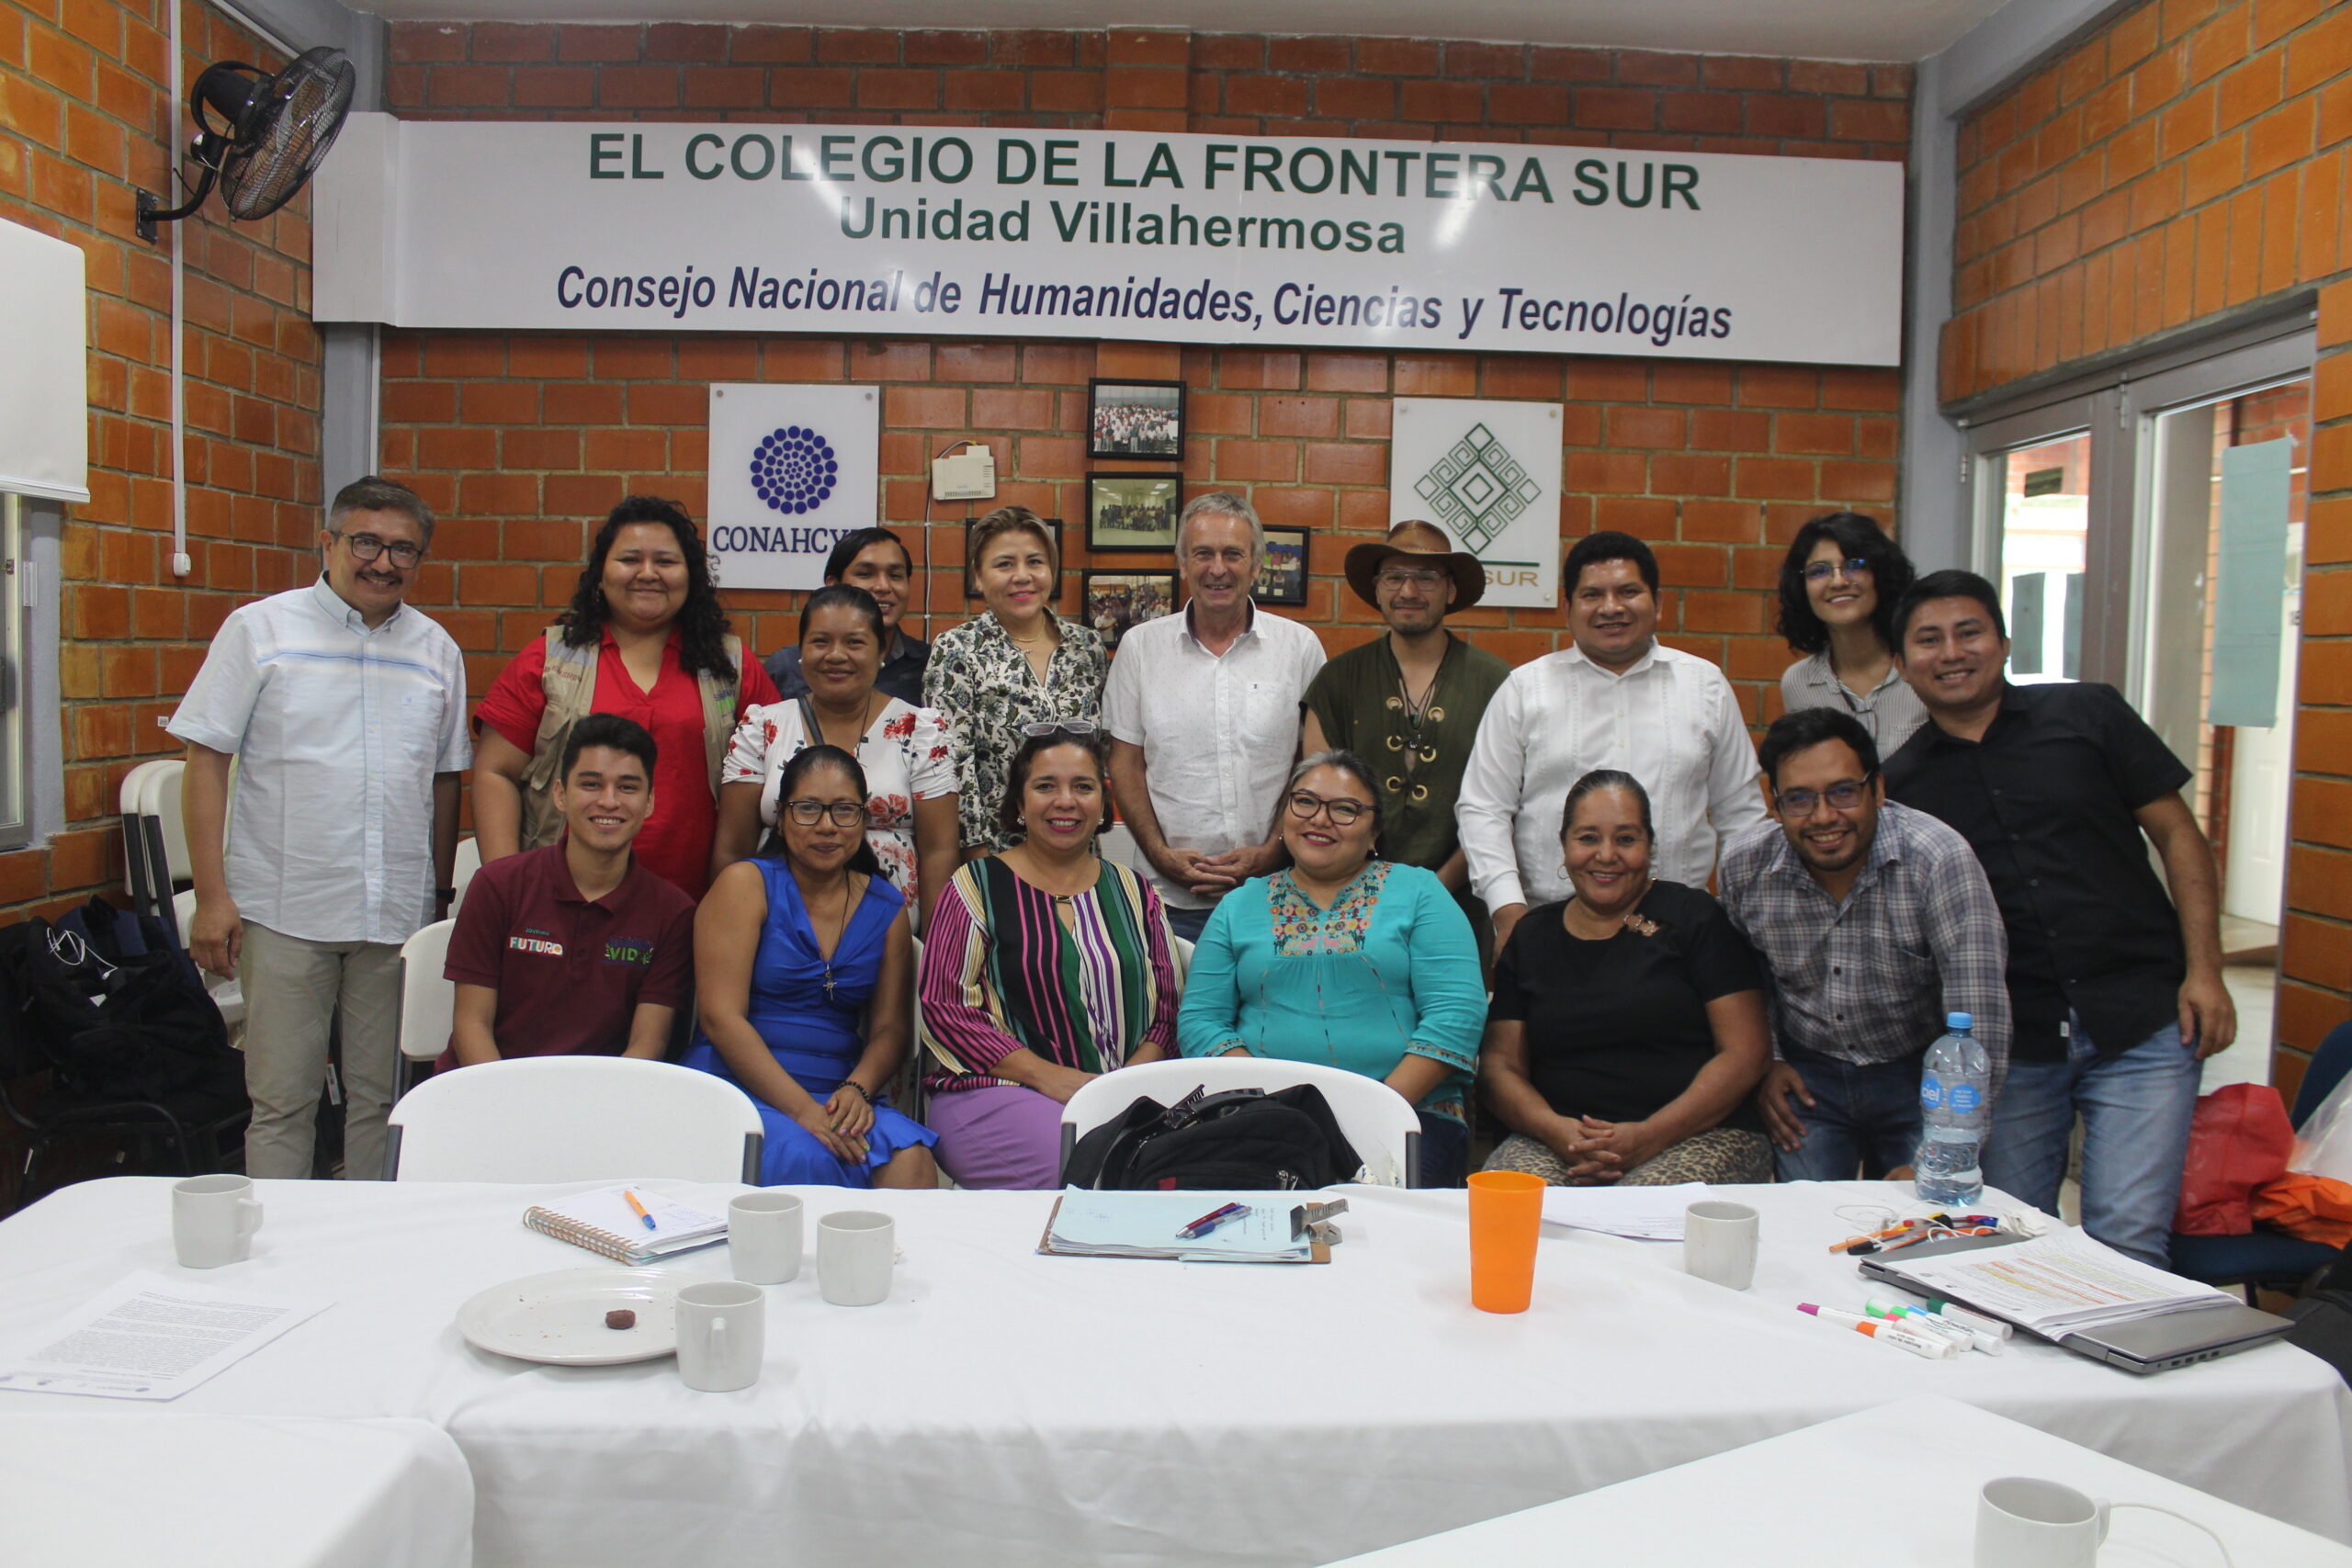 Participantes en proyectos de democratización energética en Tabasco reflexionan sobre iniciativas de economía social y solidaria